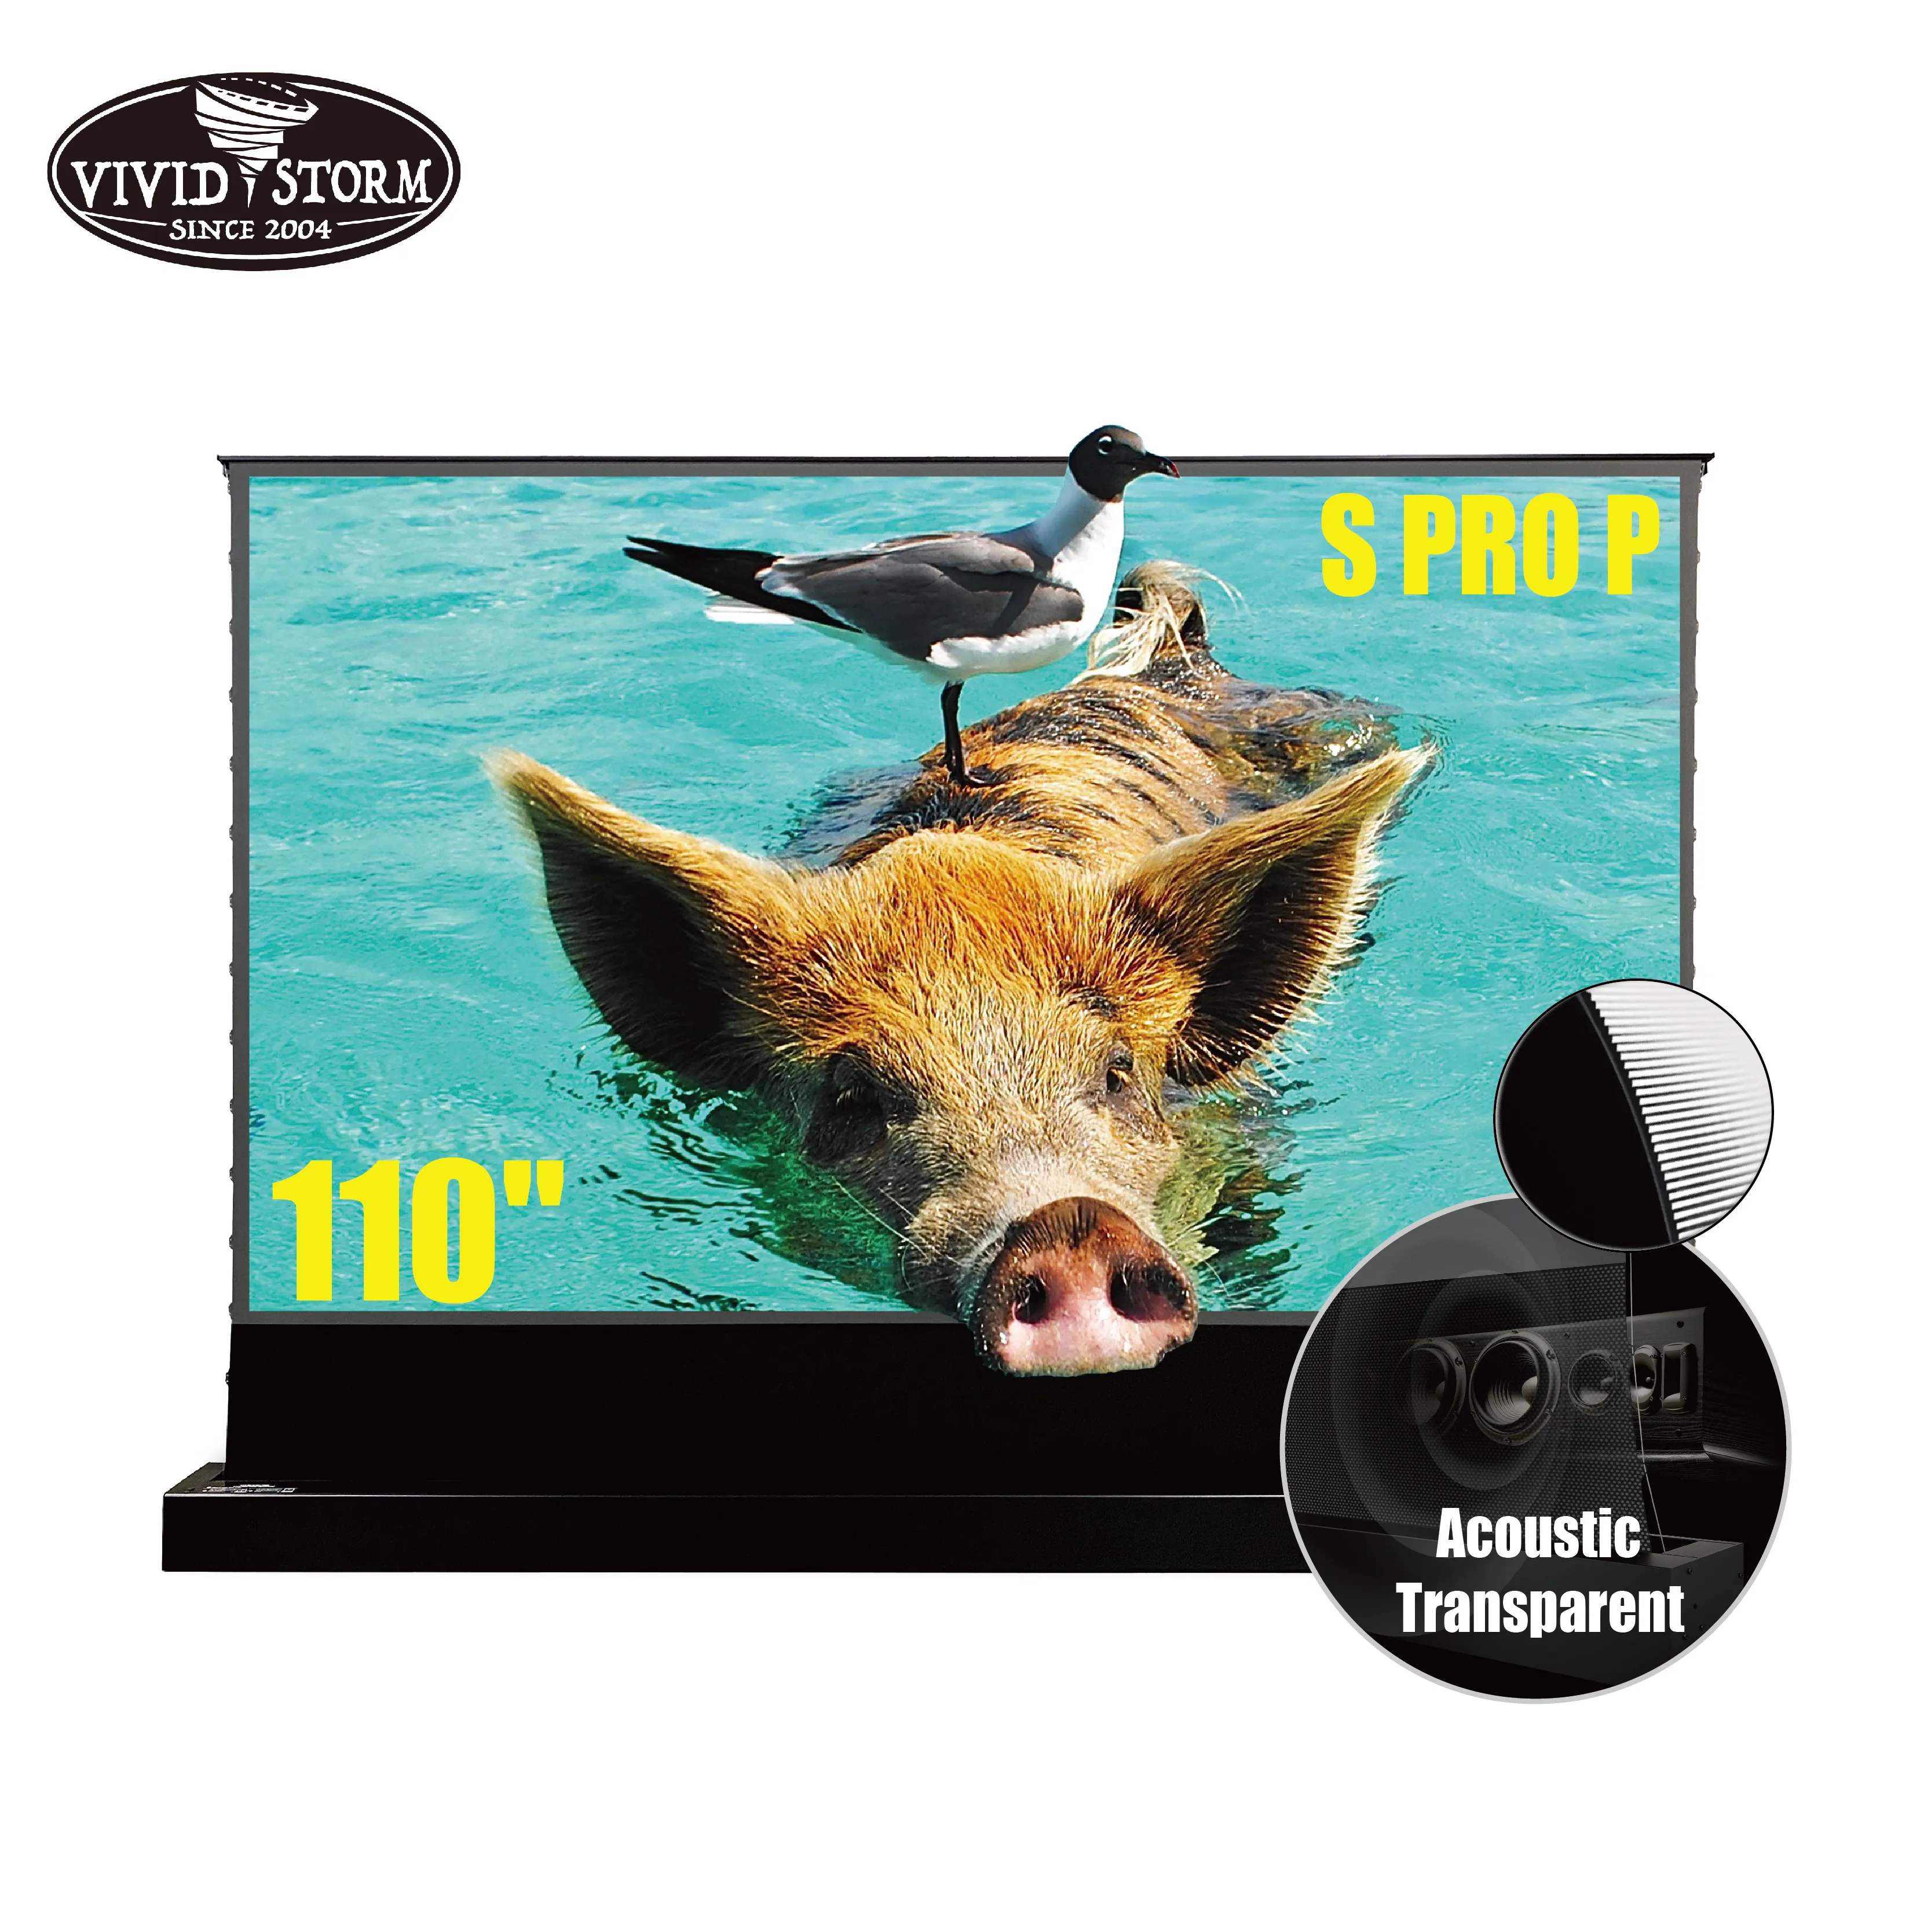 
 VIVIDSTORM S PRO P 110 дюймовый ультракороткий лазерный 4k складной домашний/кинотеатр Портативный звук акустически прозрачный напольный экран  